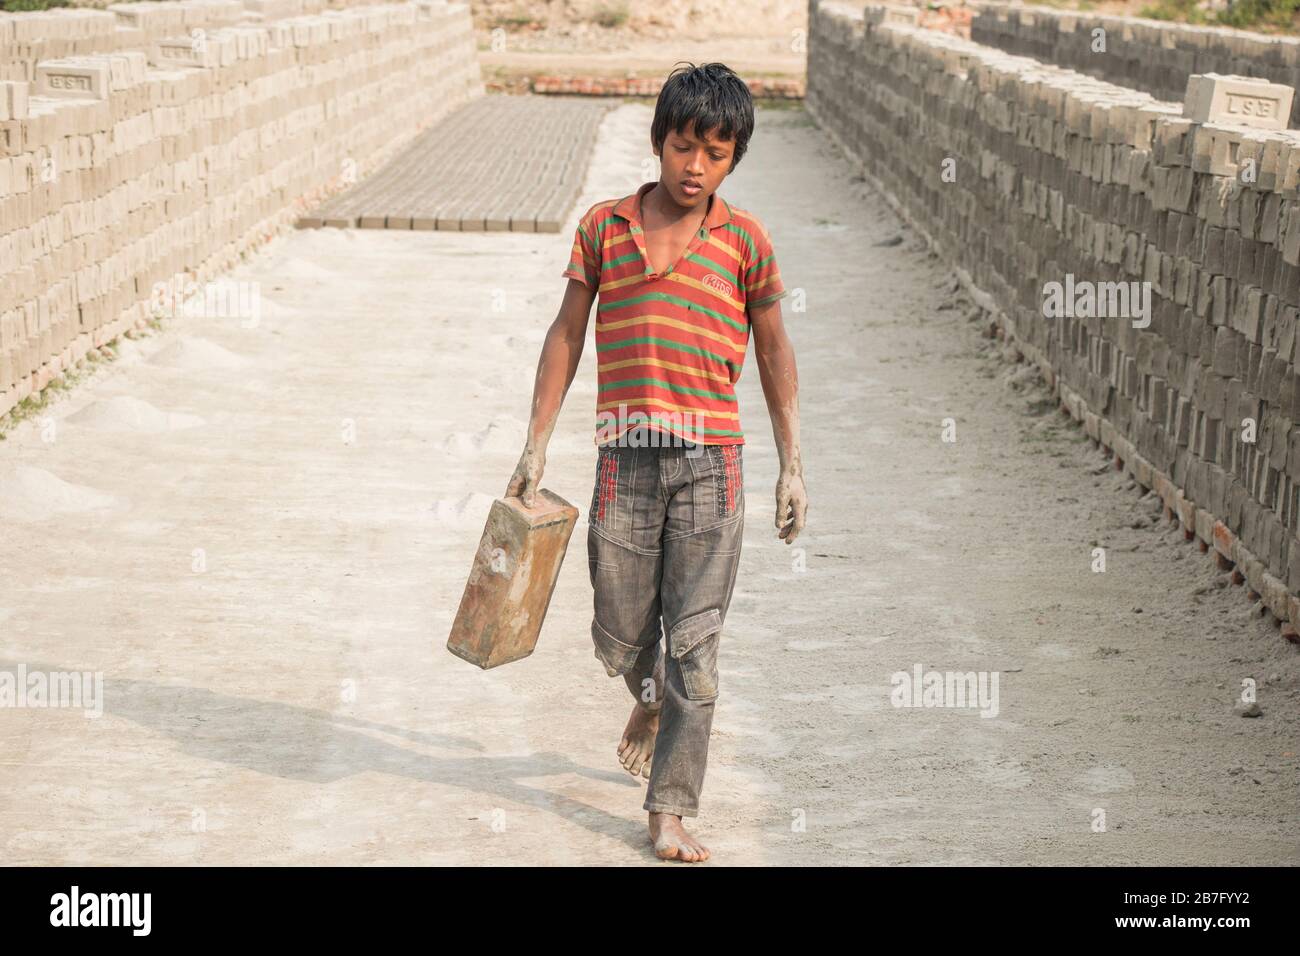 Un travail d'enfant au Bangladesh travaille dans une brique déposée sous un jour ensoleillé. Bien que le travail des enfants soit limité dans cette industrie, il travaille pour la nourriture. Banque D'Images